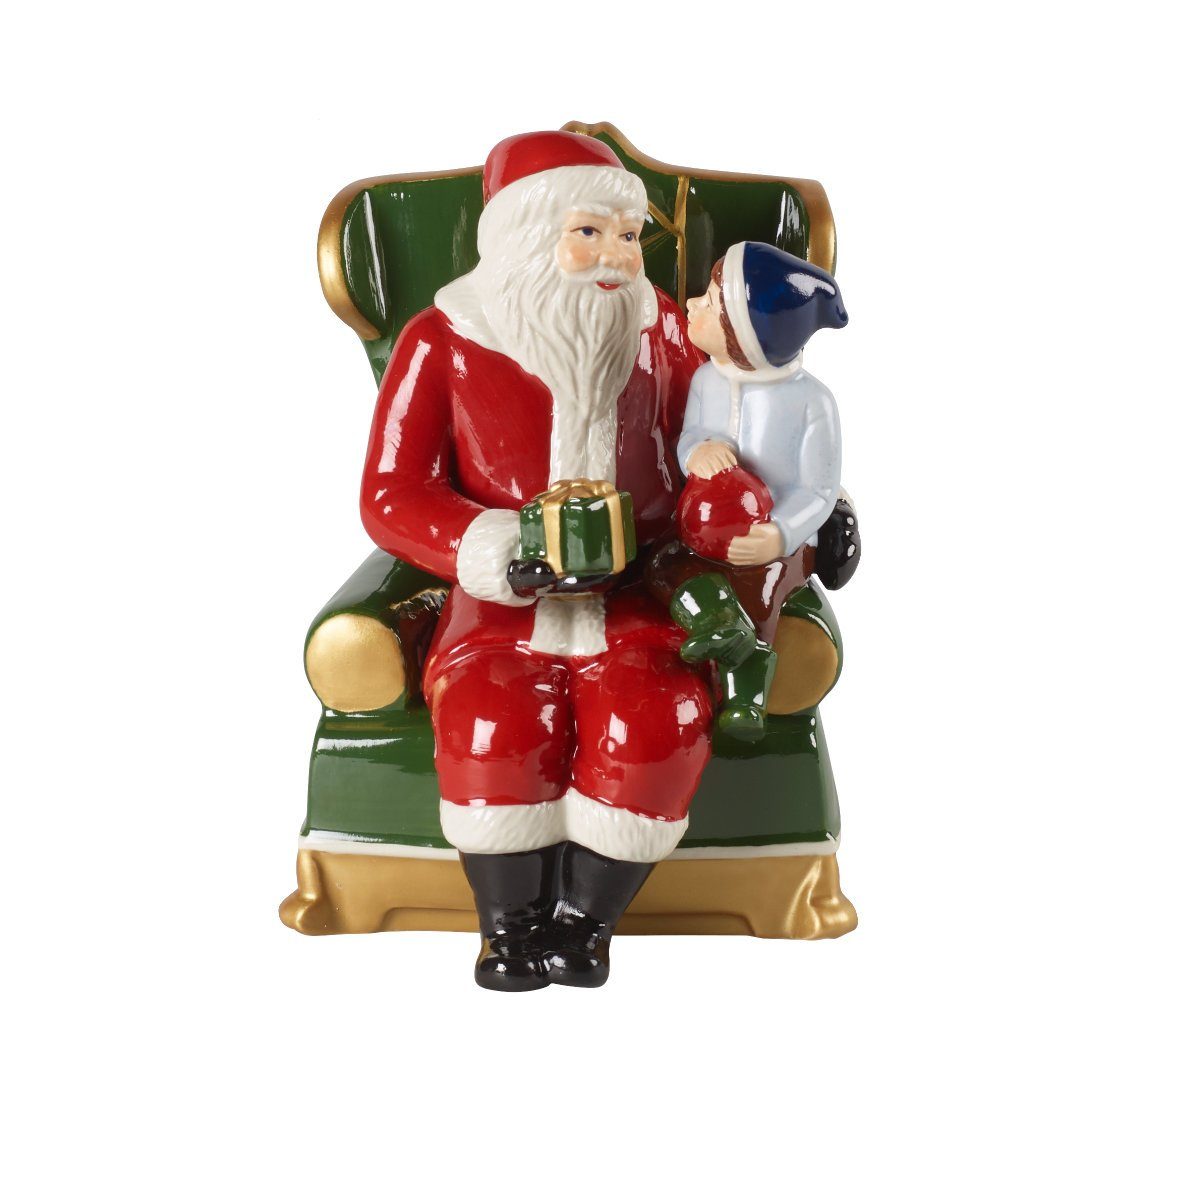 Villeroy & Boch Weihnachtsfigur Christmas Toys Weihnachtsgeschirr, 10x10x15 cm